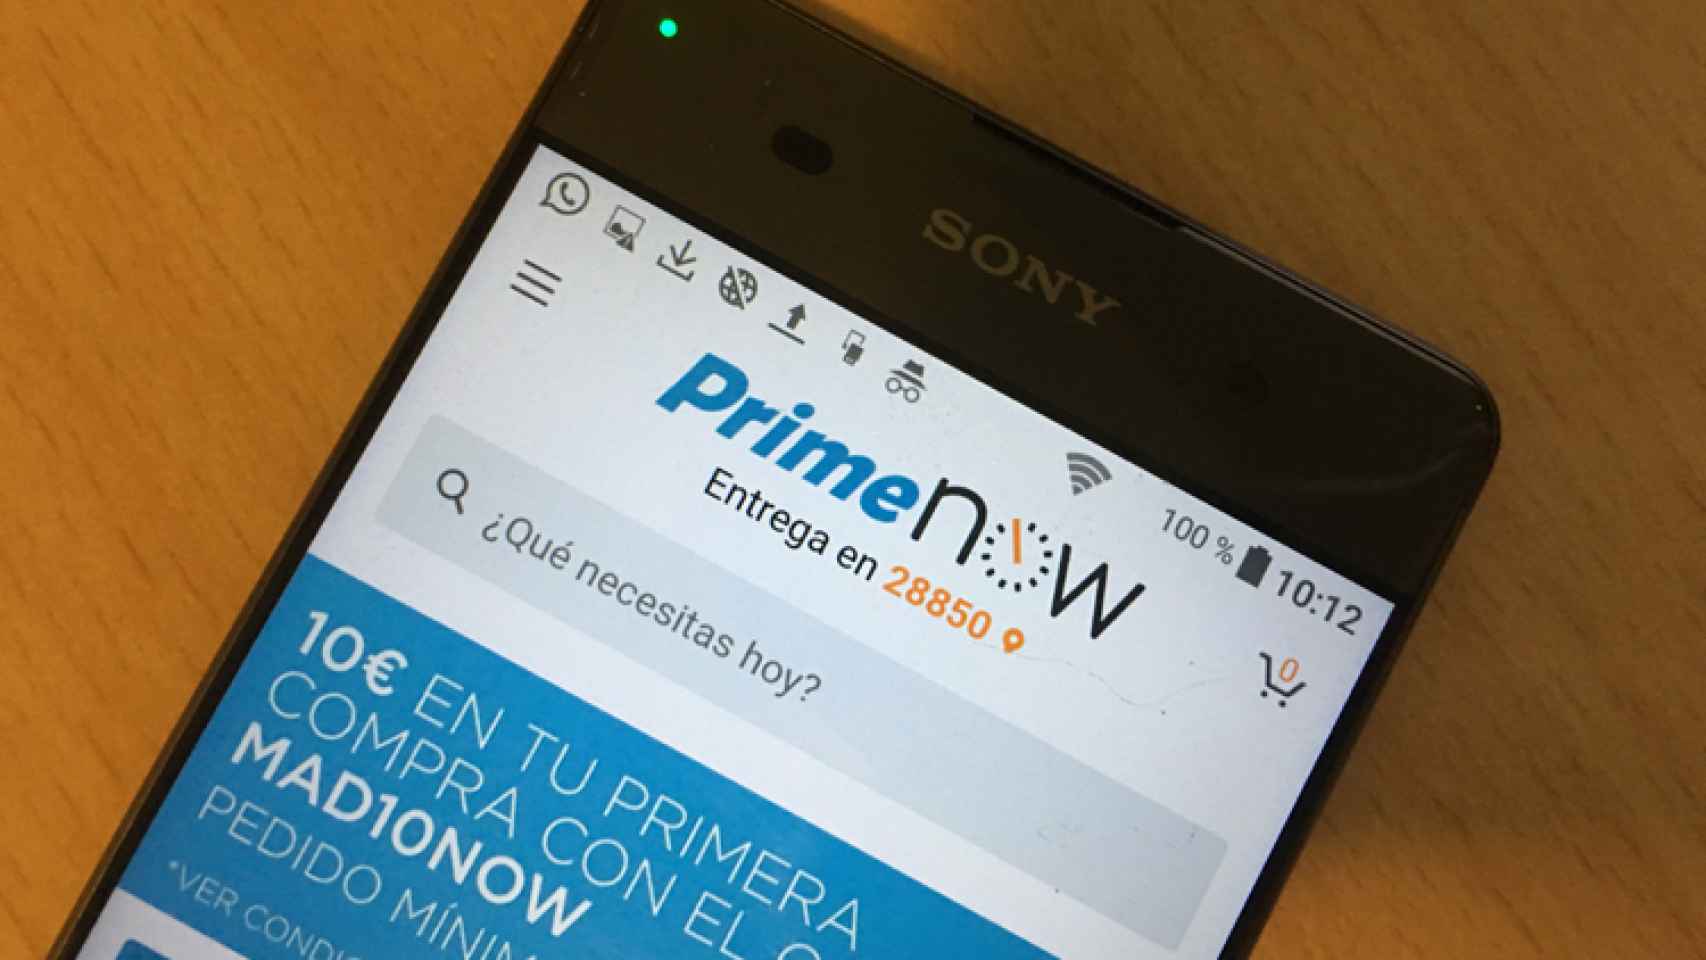 Amazon Prime Now, recibe tus pedidos gratis en dos horas